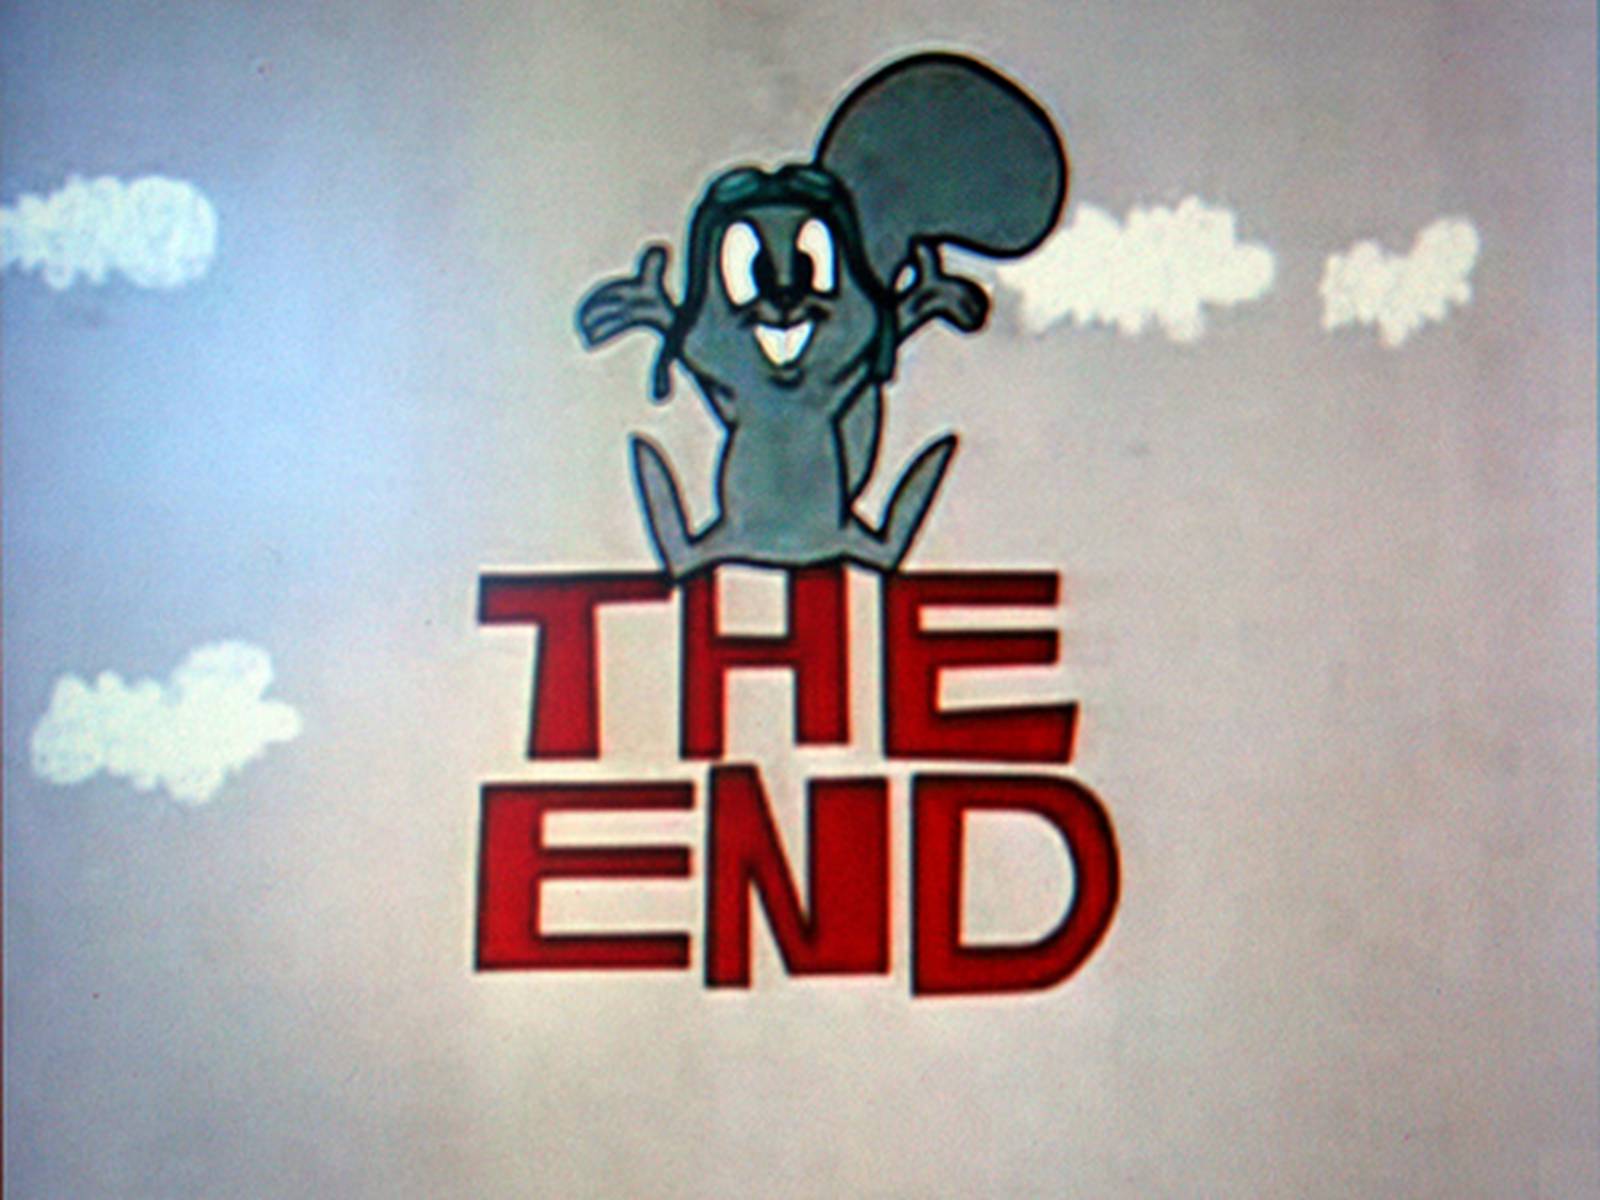 Как будет конец на английском. The end. Конец the end. The end рисунок. The end надпись.